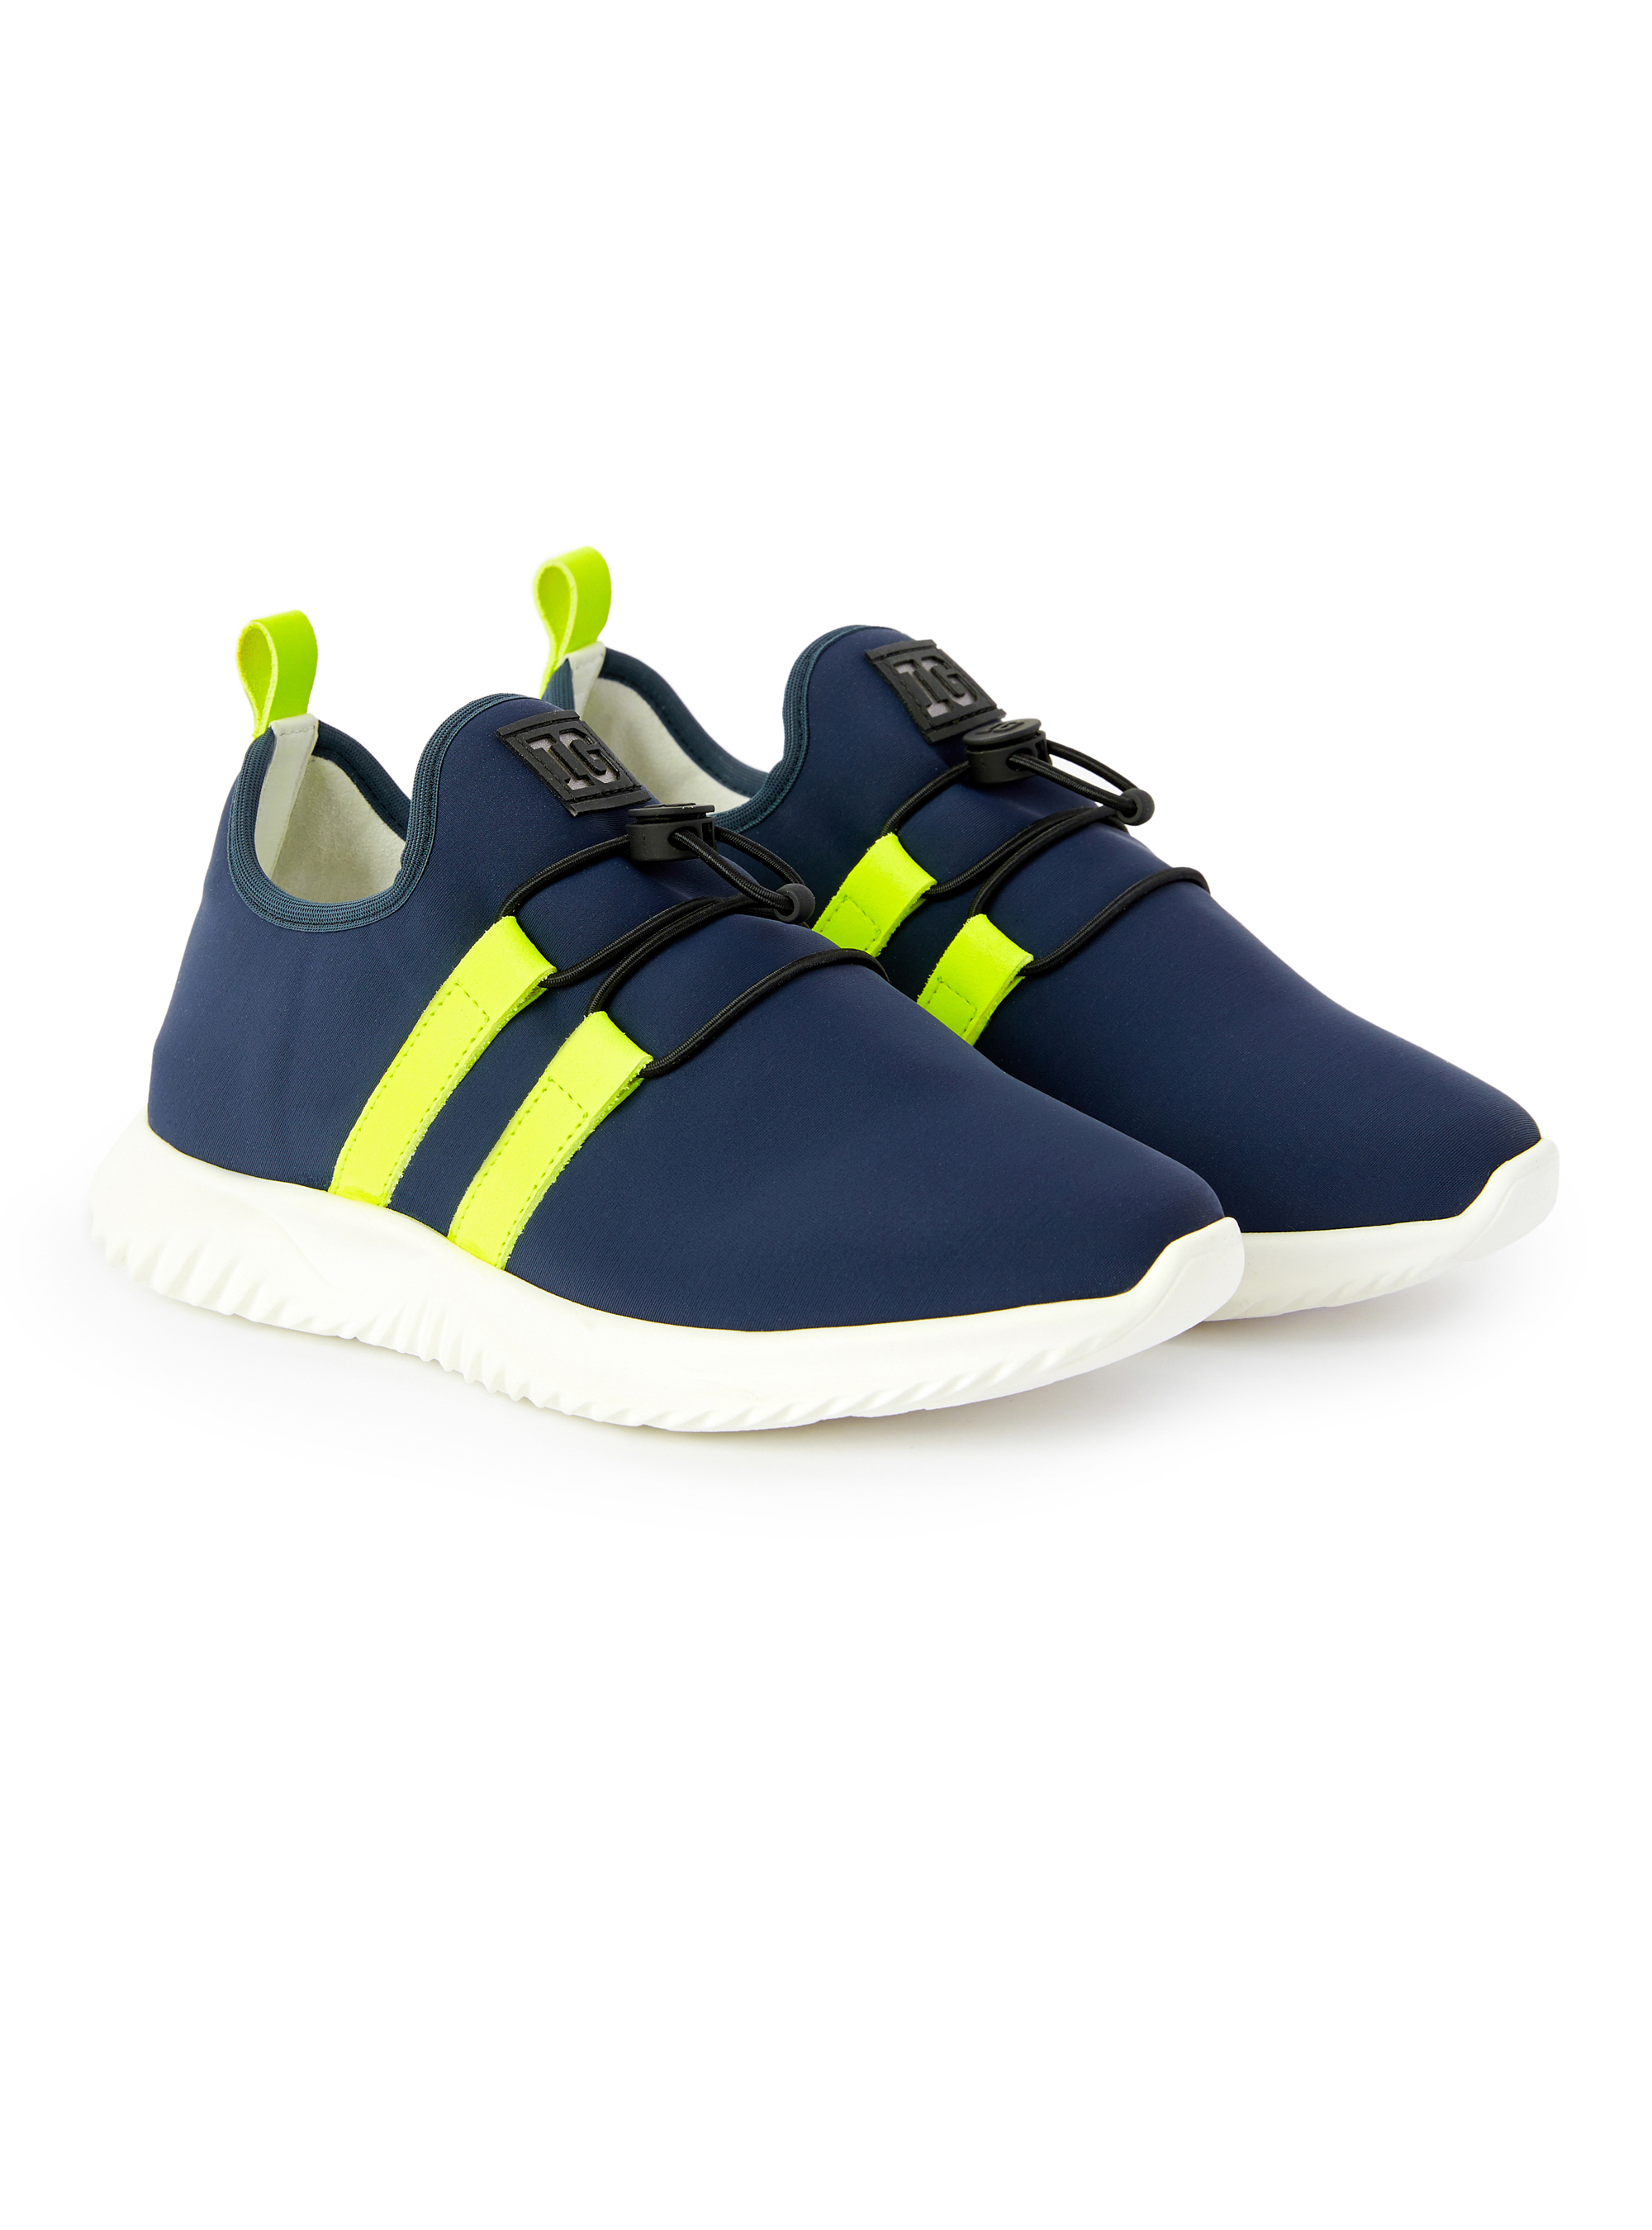 Navy blue neoprene sneakers - Shoes - Il Gufo